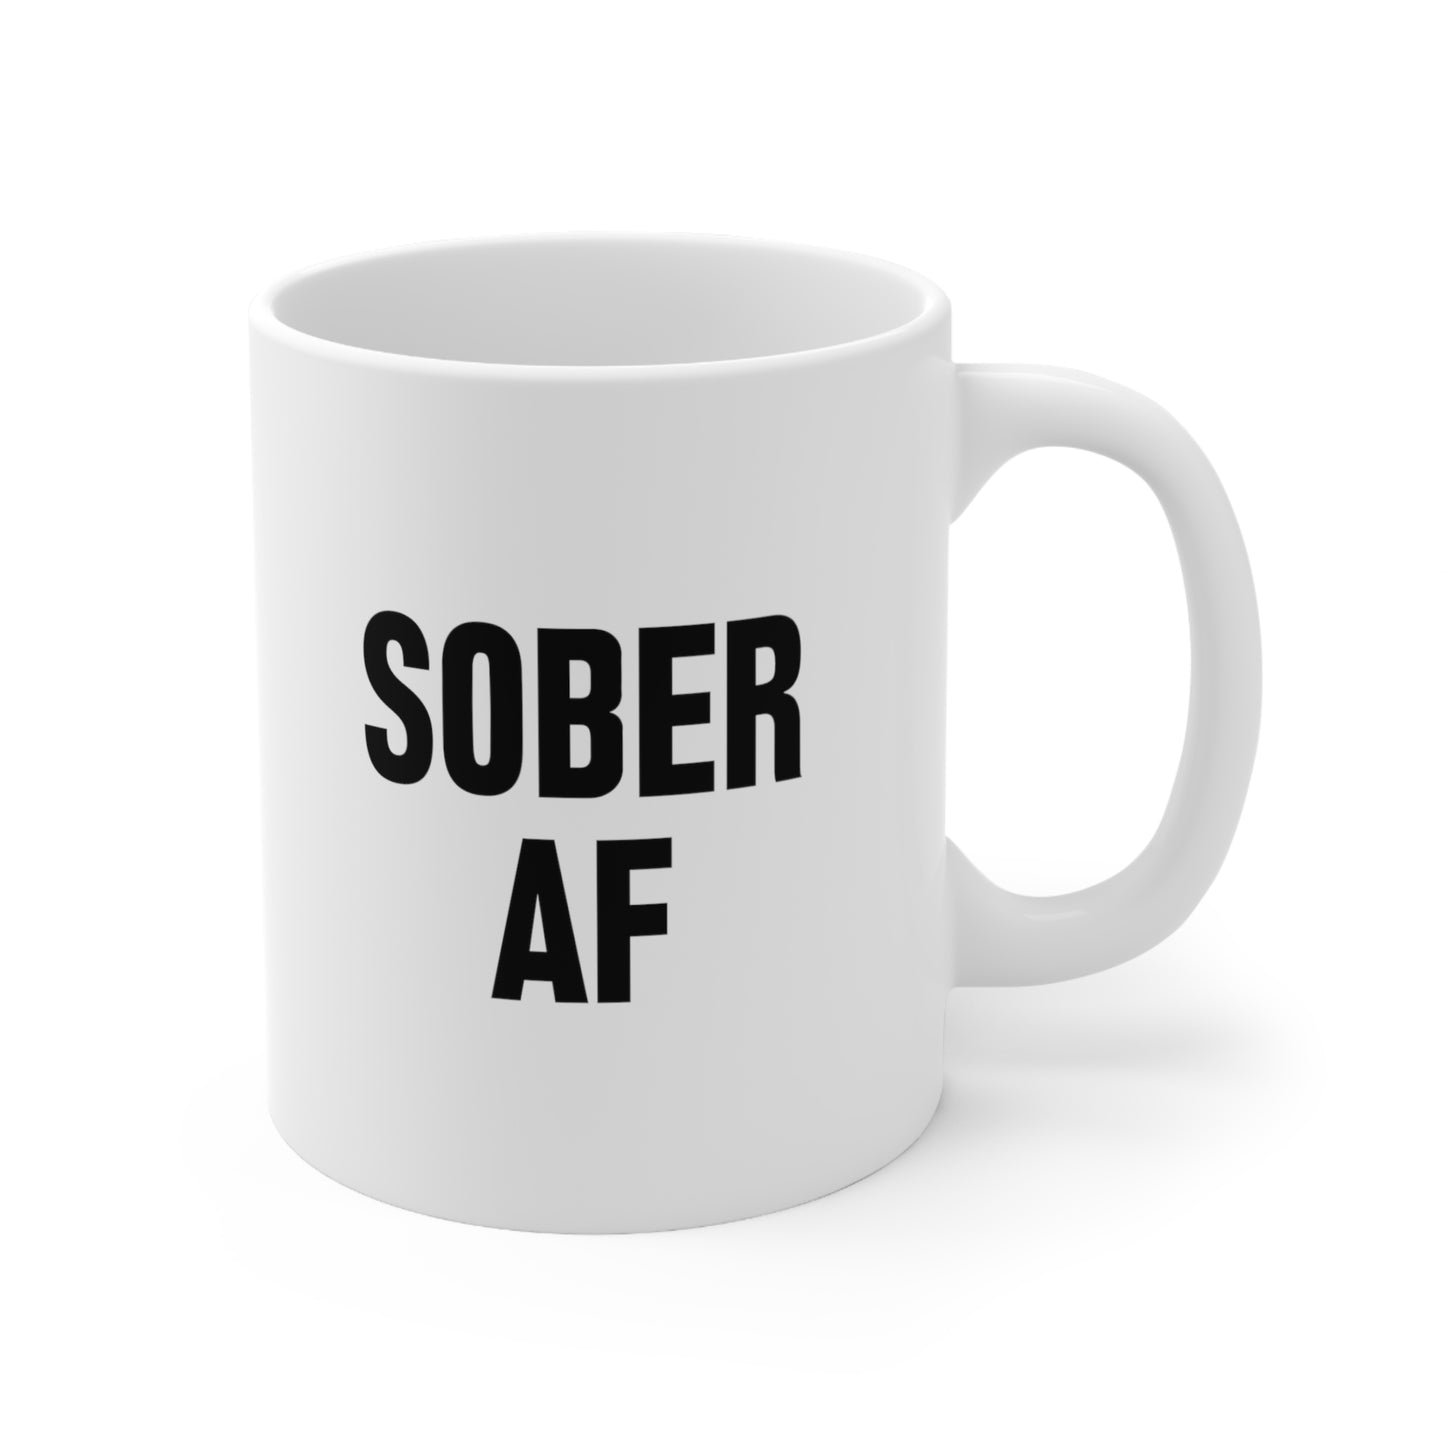 Sober AF Coffee Mug 11oz